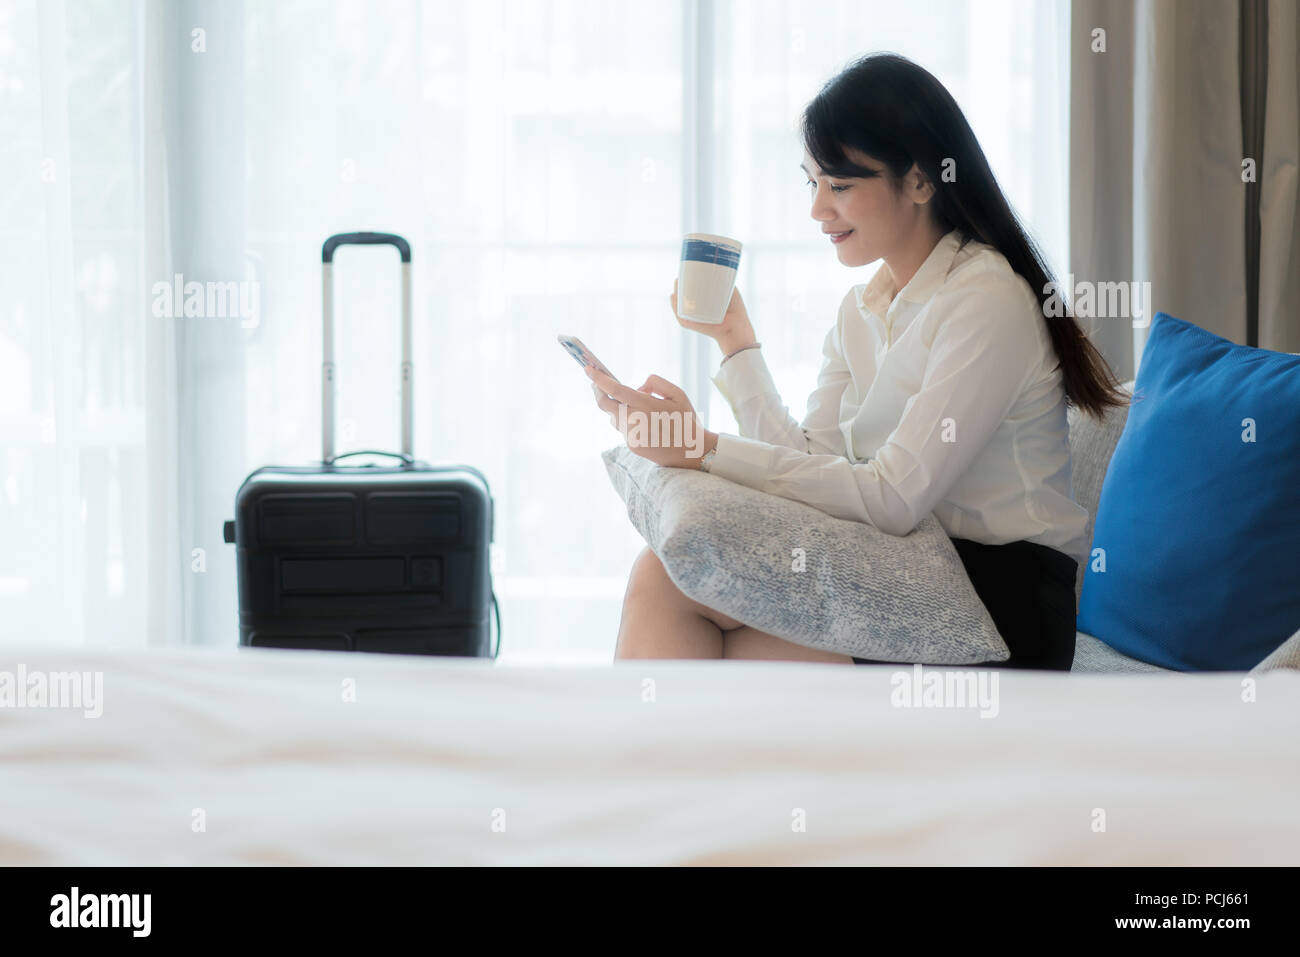 Belle asiatique young smiling businesswoman in suit de boire du café et à l'aide de téléphone mobile tout en étant assis sur le canapé dans la chambre d'hôtel. Les voyages d'affaires. Banque D'Images